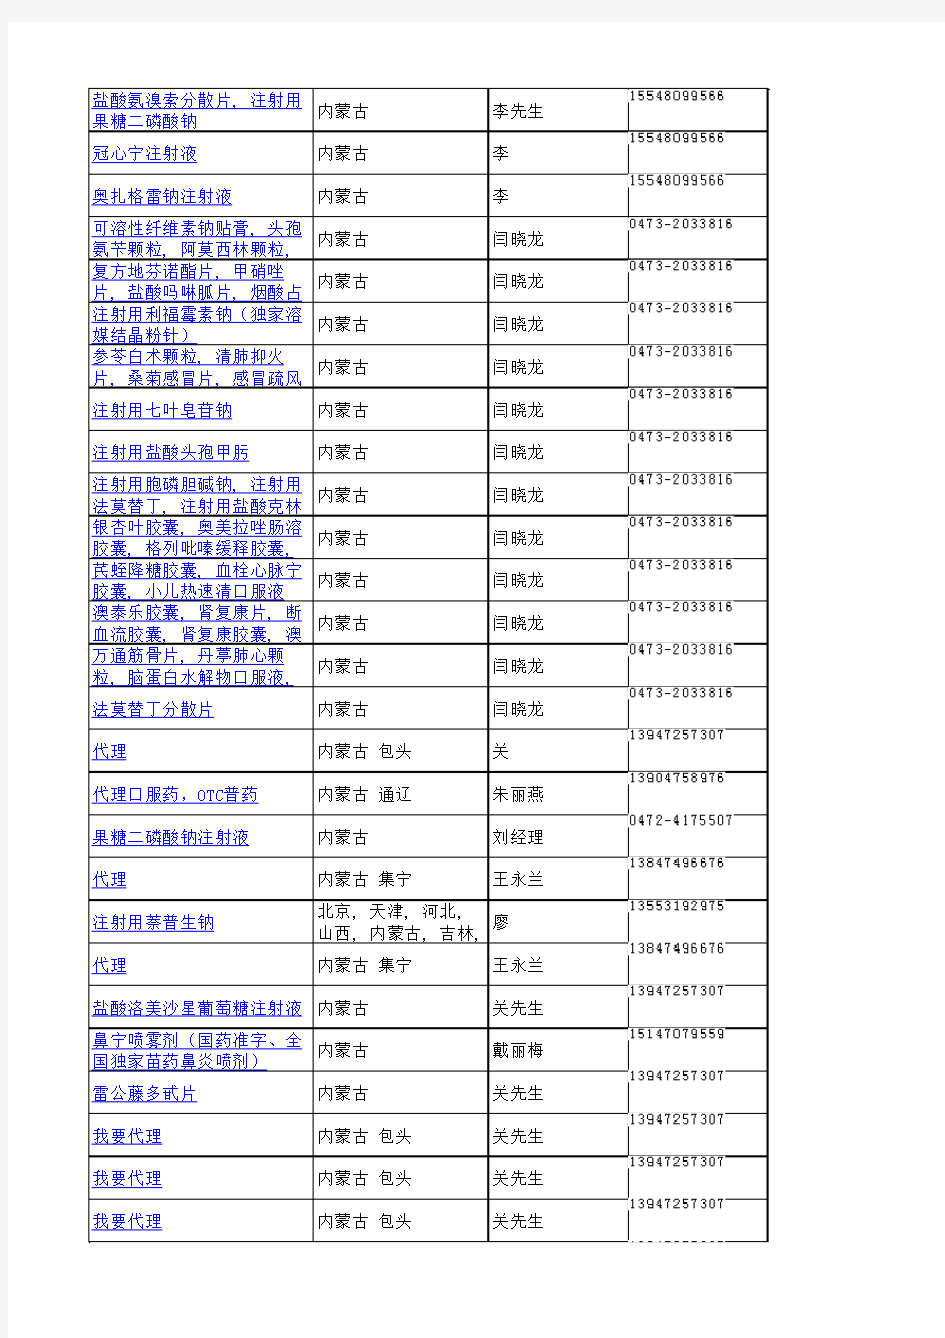 内蒙古医药代理商名单(2010年11月1日-2010年11月19日)